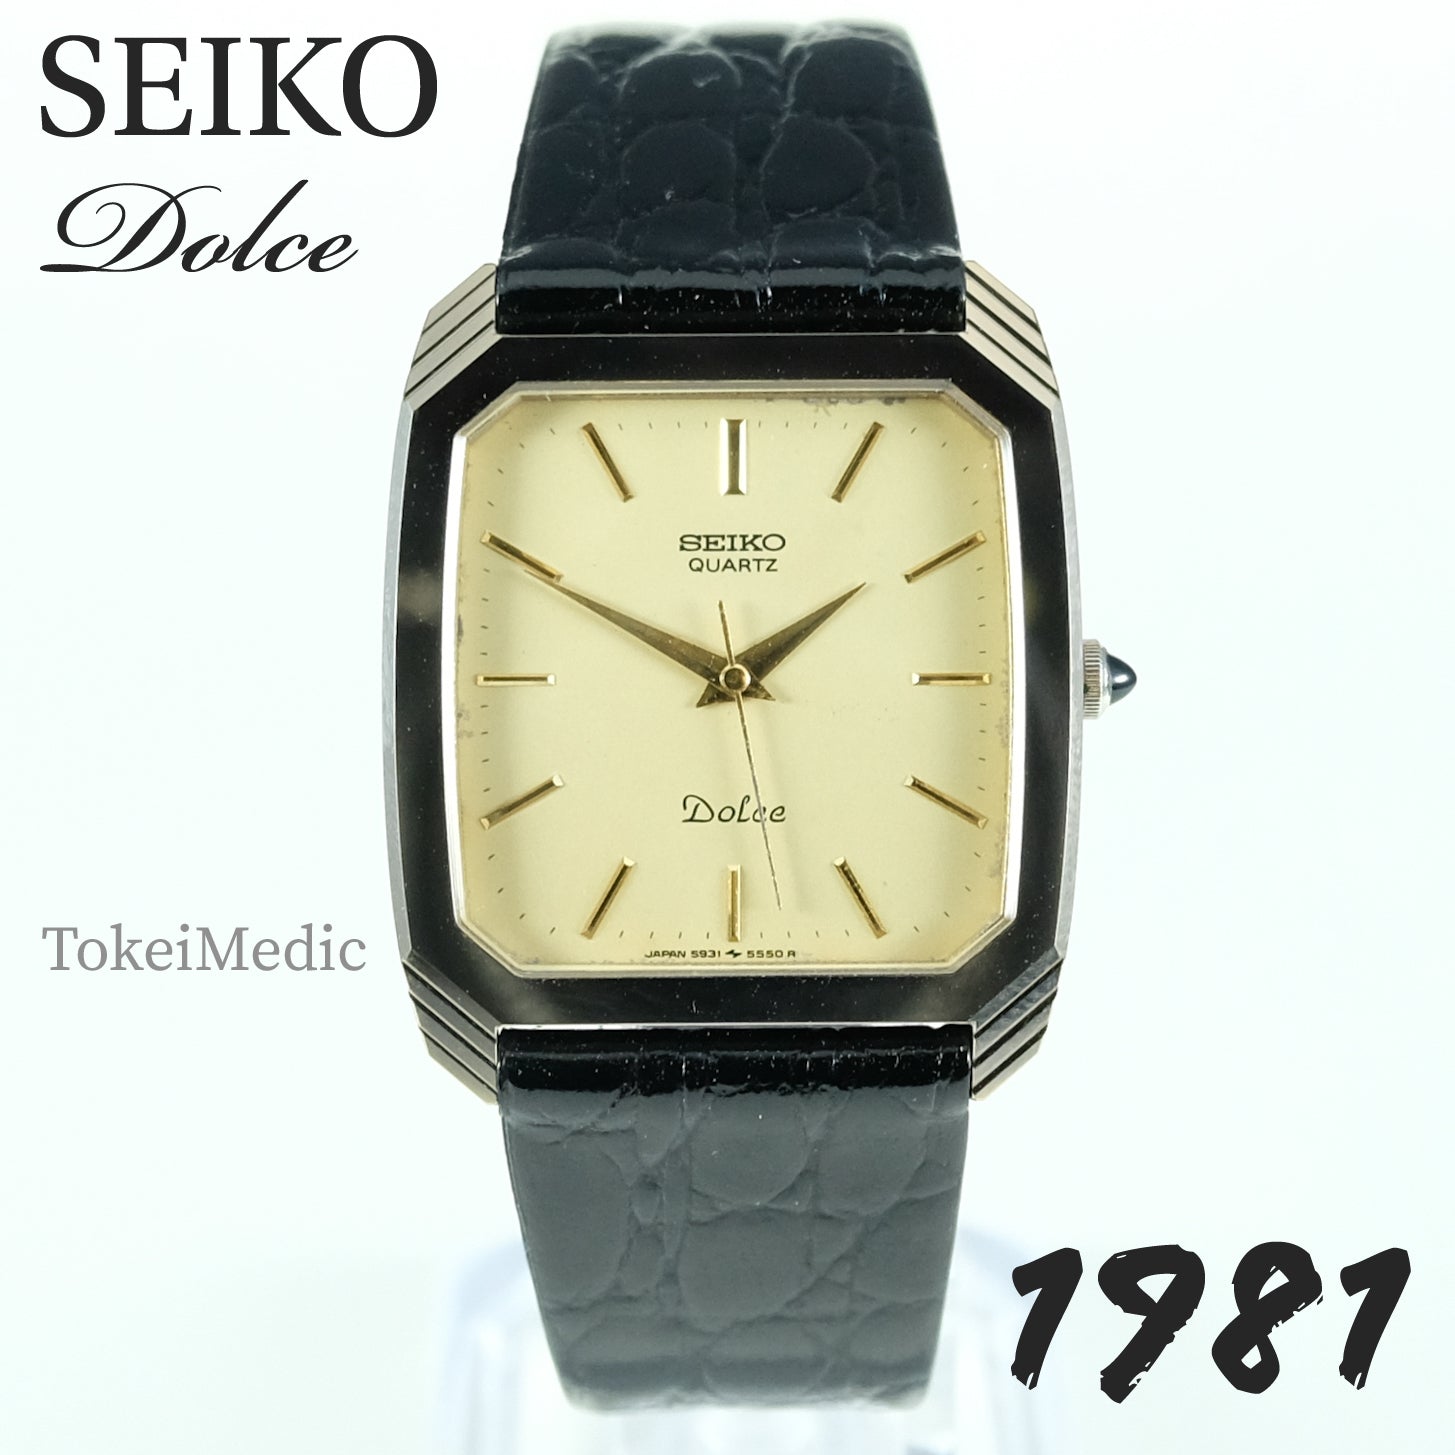 SEIKO DOLCE 5931-5300 SHA メンズクォーツウォッチ-